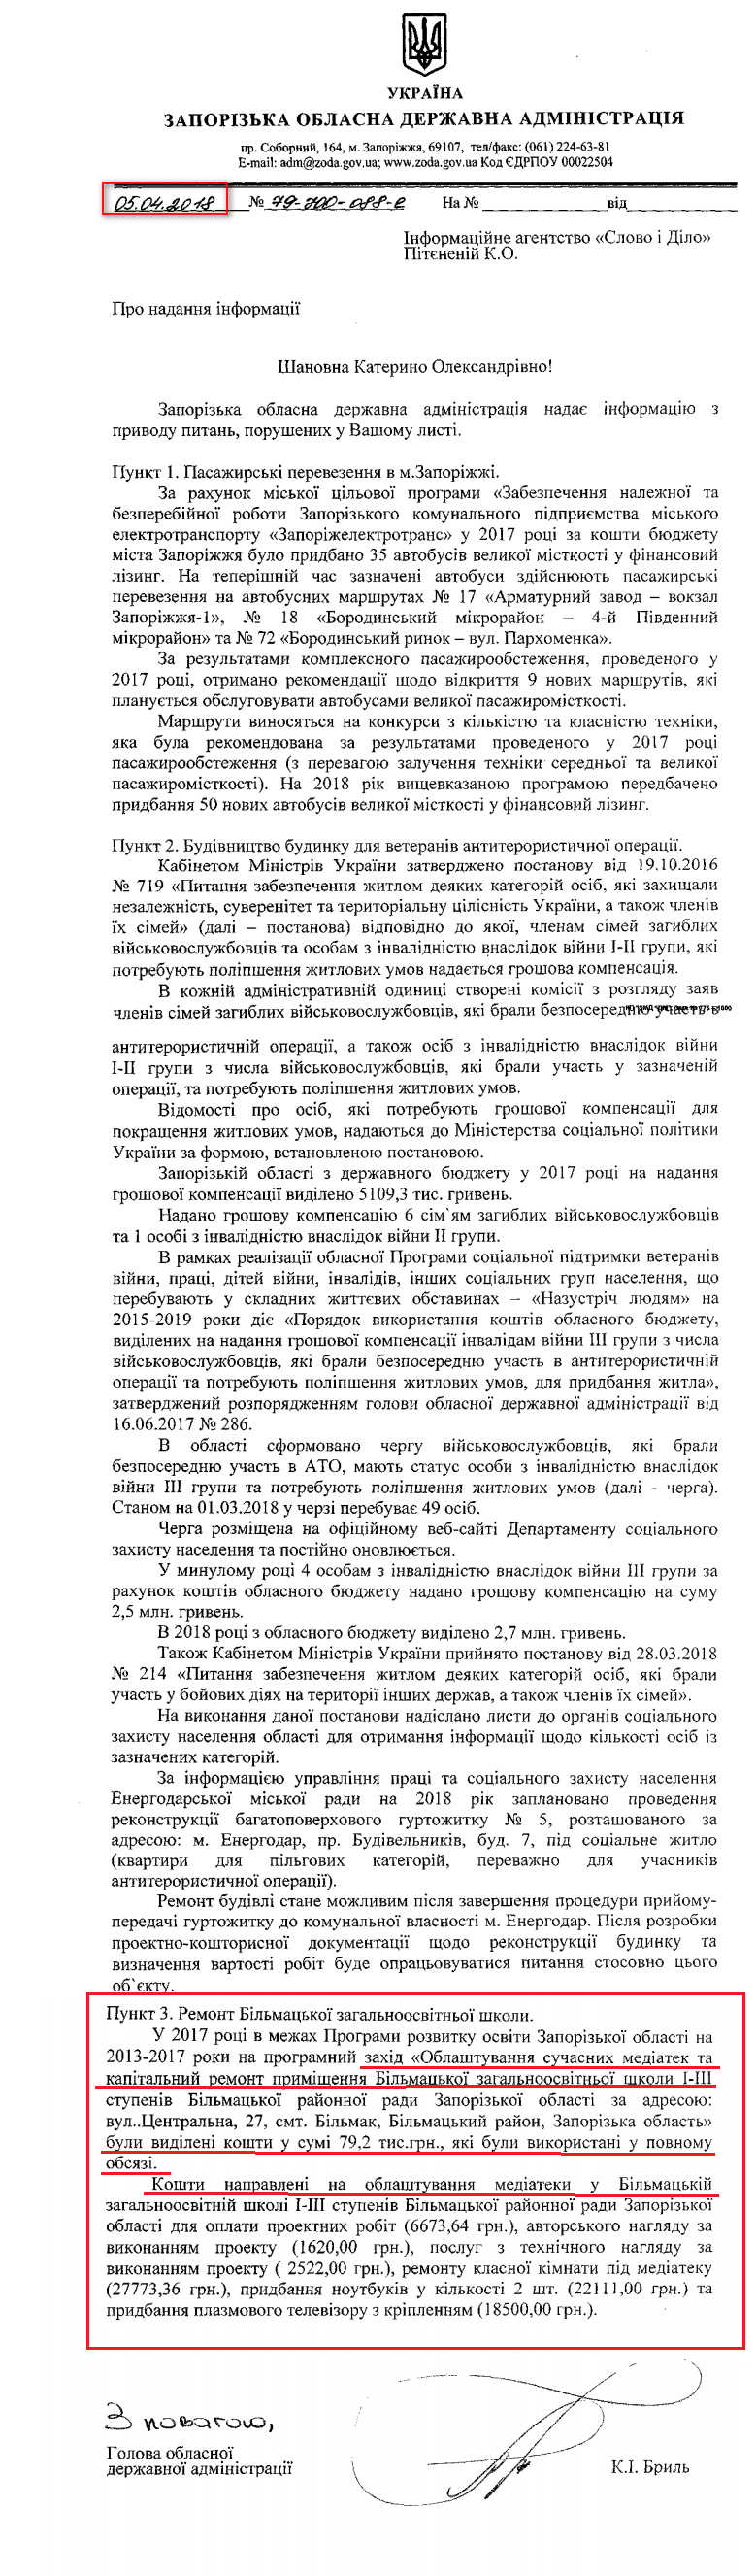 Лист Запорізької обласної державної адміністрації від 5 квітня 2018 року